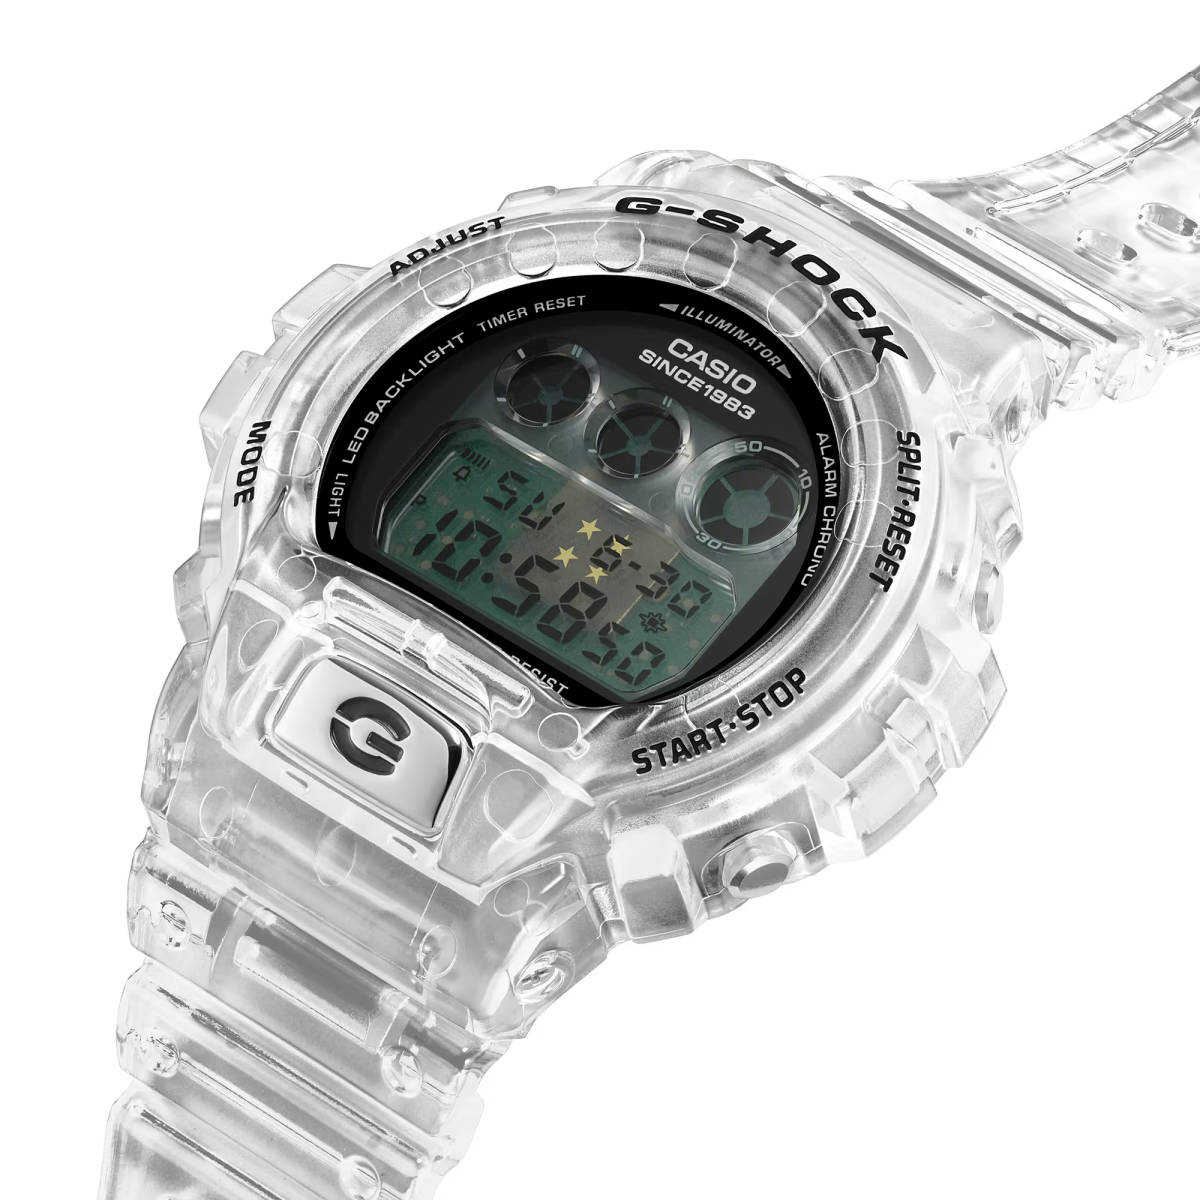 腕時計 カシオ G-SHOCK DW-6940RX-7JR G-SHOCK 40th Anniversary CLEAR REMIX ストップウォッチ デジタル 新品未使用 正規品 送料無料_画像4